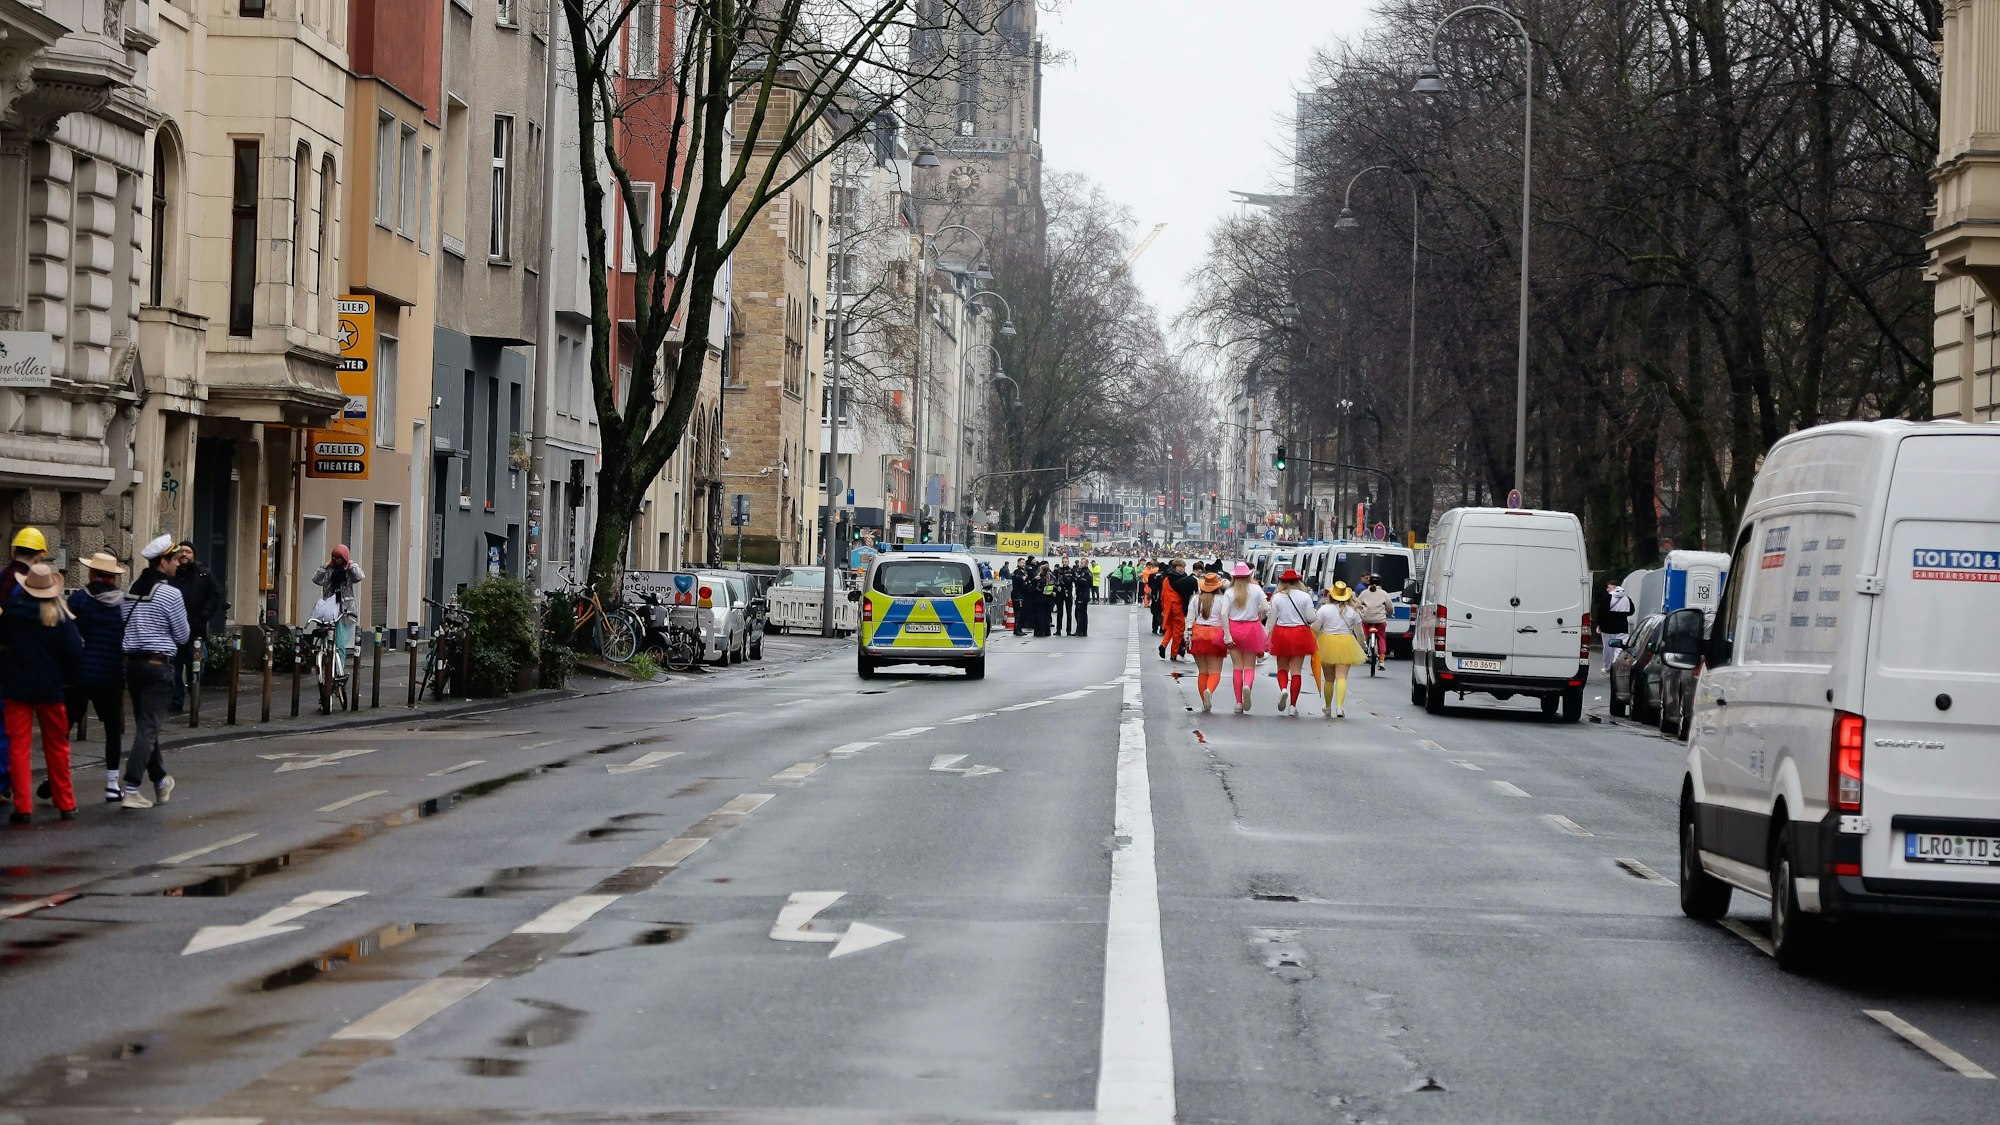 Über die Roonstraße kommt man nach einer Kontrolle auf die Zülpicher Straße. Gegen 10 Uhr kann von Überfüllung keine Rede sein.